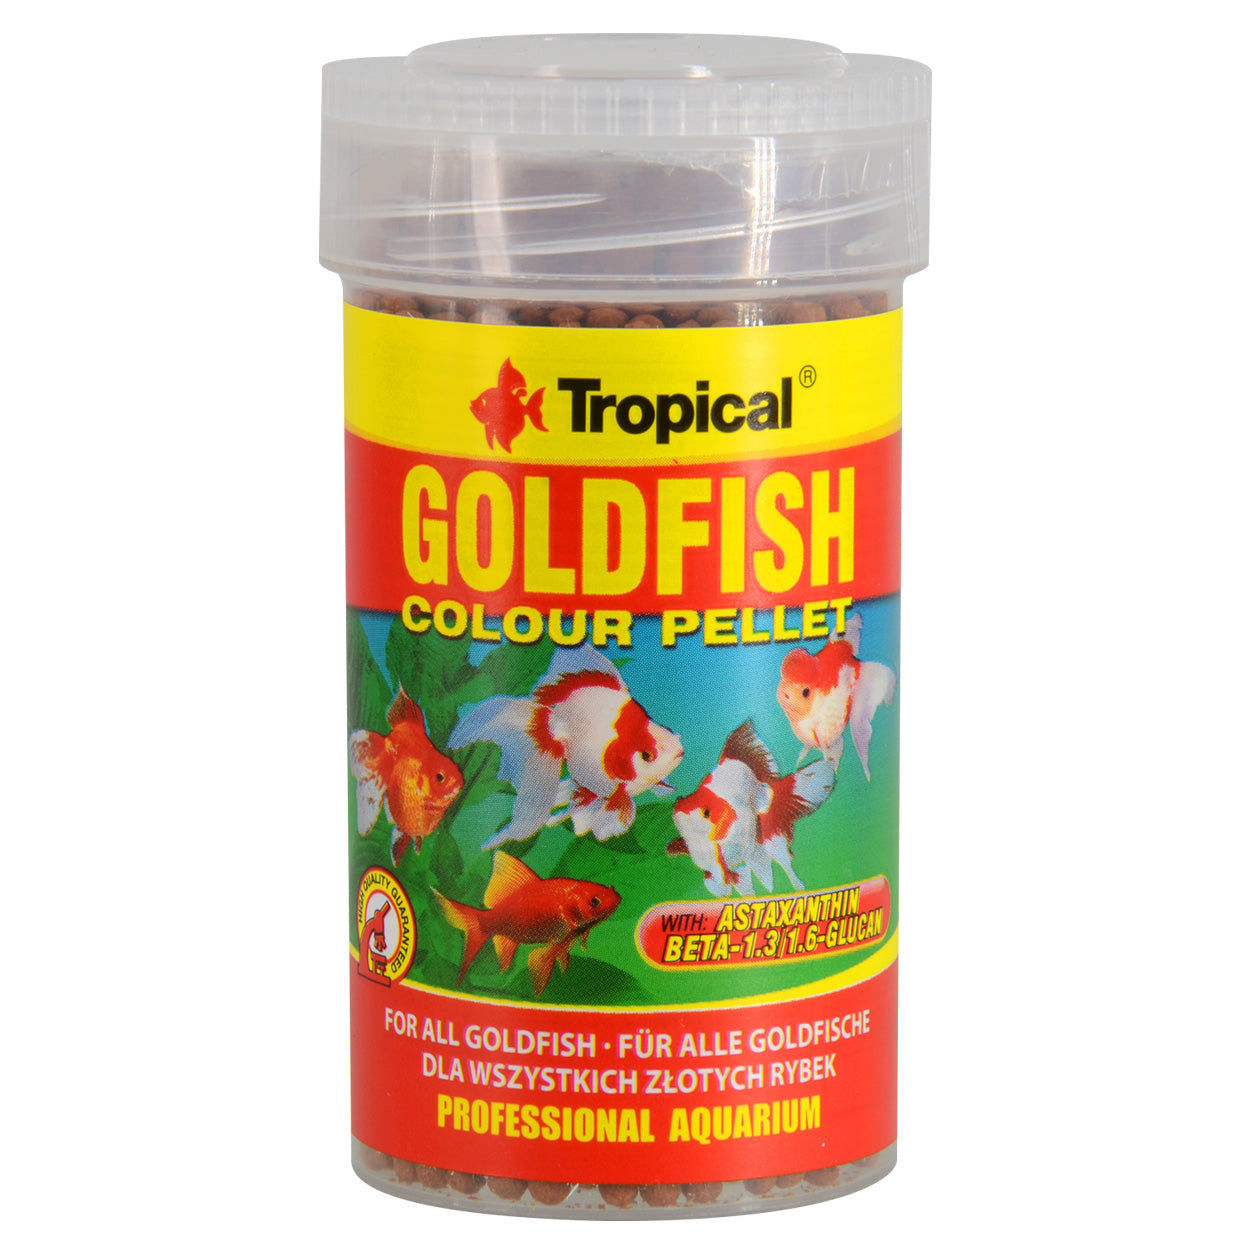 Tropical Goldfish Colour Pellets - 36 g